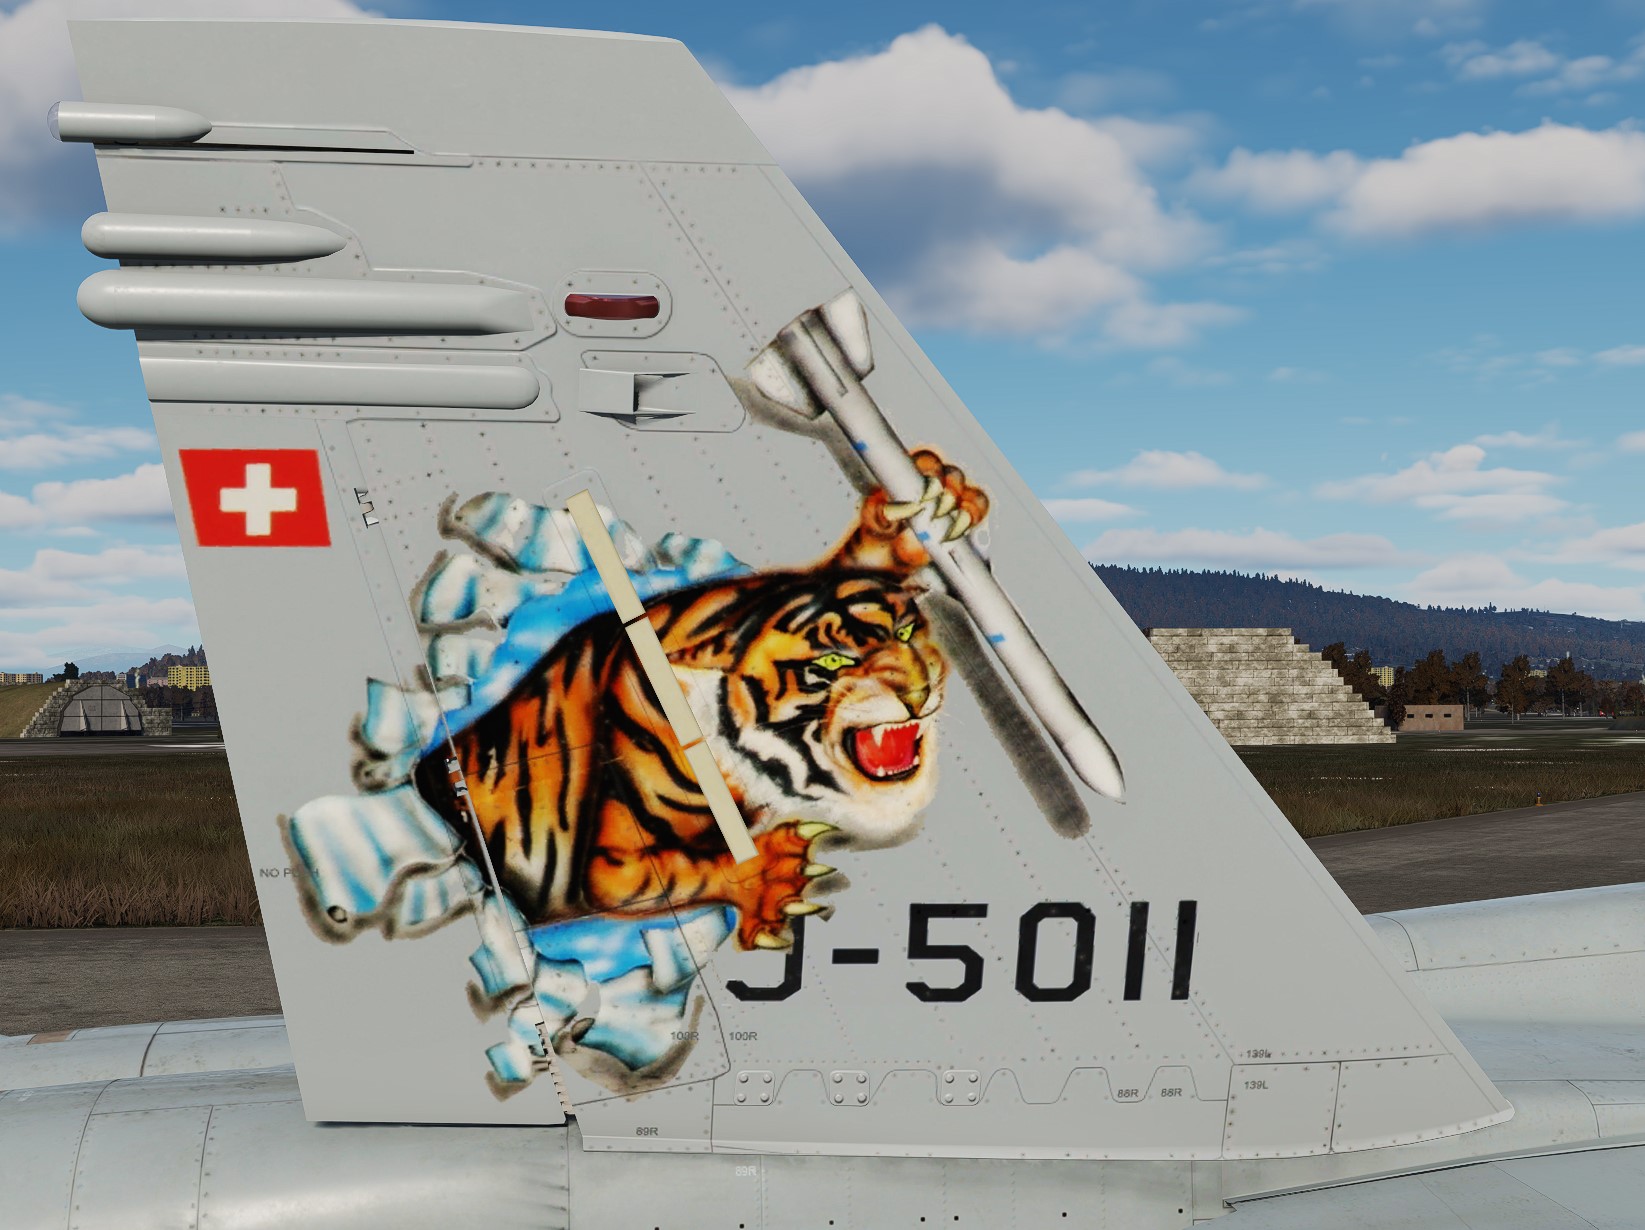 Swiss Air Force J-5011 Tigers 2004